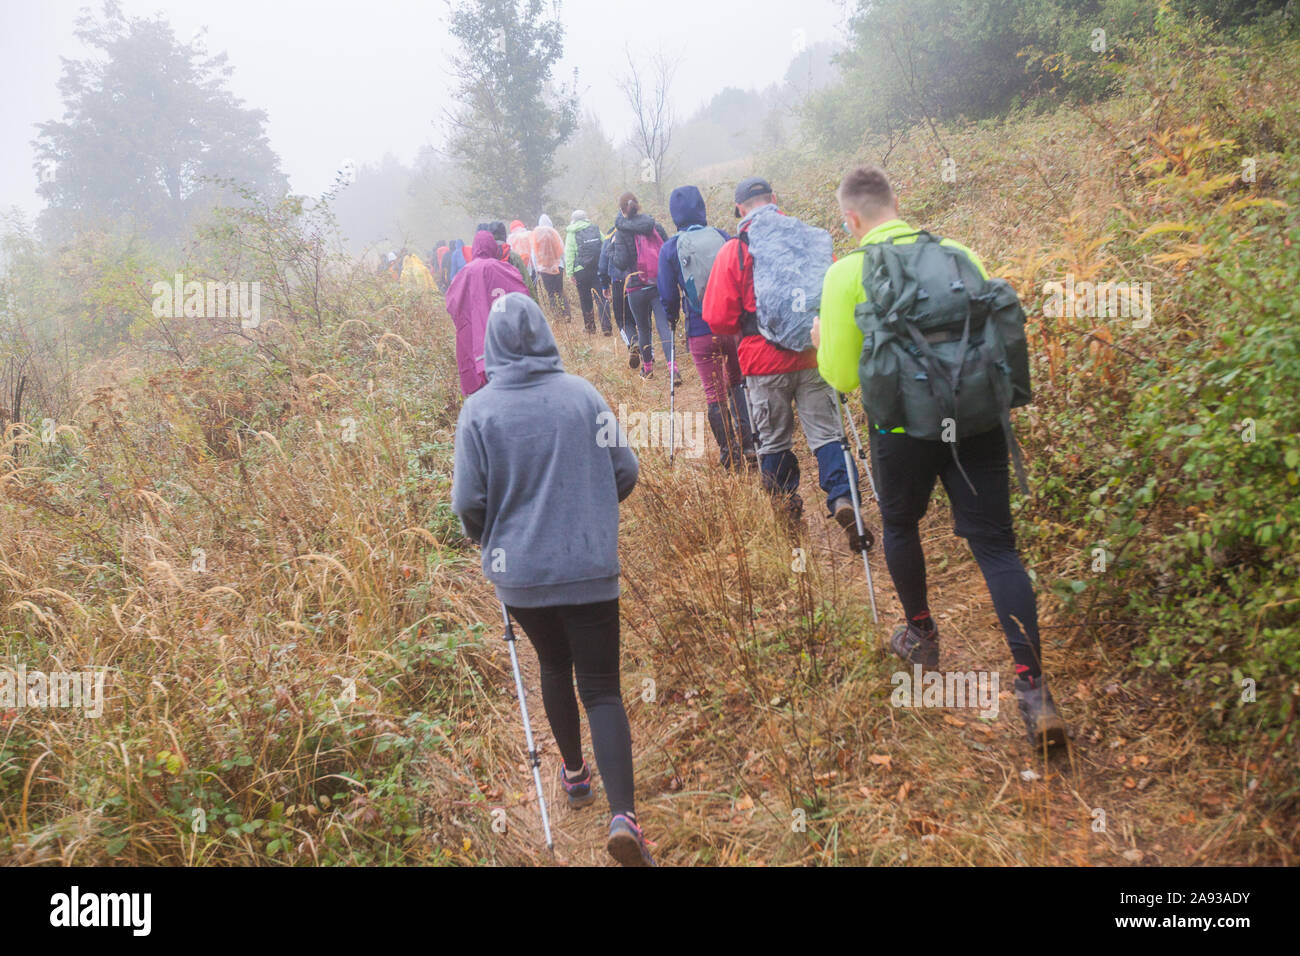 Gruppe aktiver Menschen wandern auf den regnerischen Herbst Tag tragen Sie eine Regenjacke. Wirkliche unkenntlich Wanderer, Rückspiegel, bewölkter Himmel im Hintergrund. Stockfoto